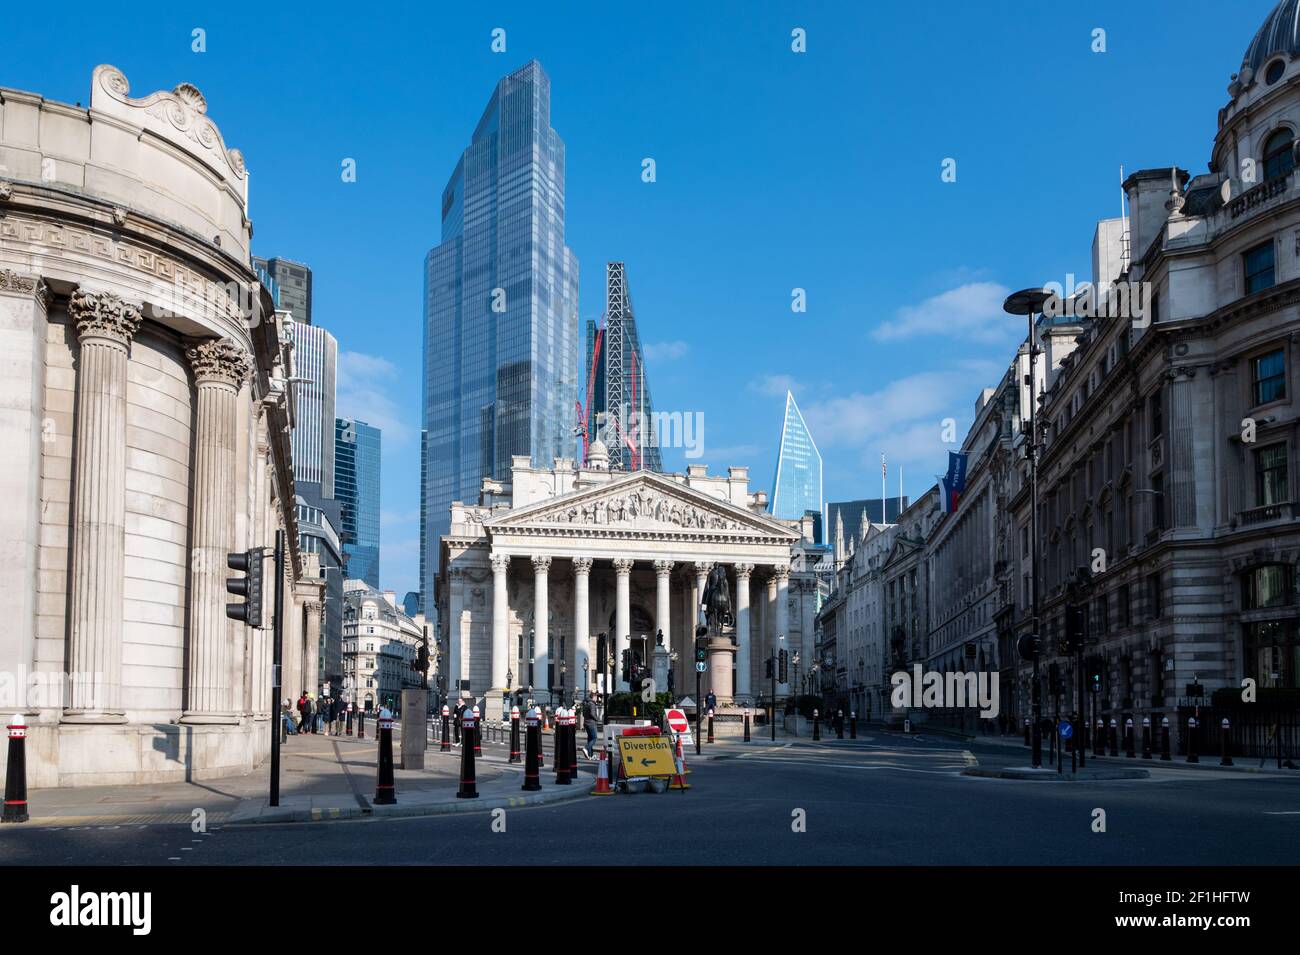 Covid Pandemiesperre; City of London Finanzviertel mit der Bank of England auf der linken Seite, die Royal Exchange zentral und Wolkenkratzer dahinter. Stockfoto